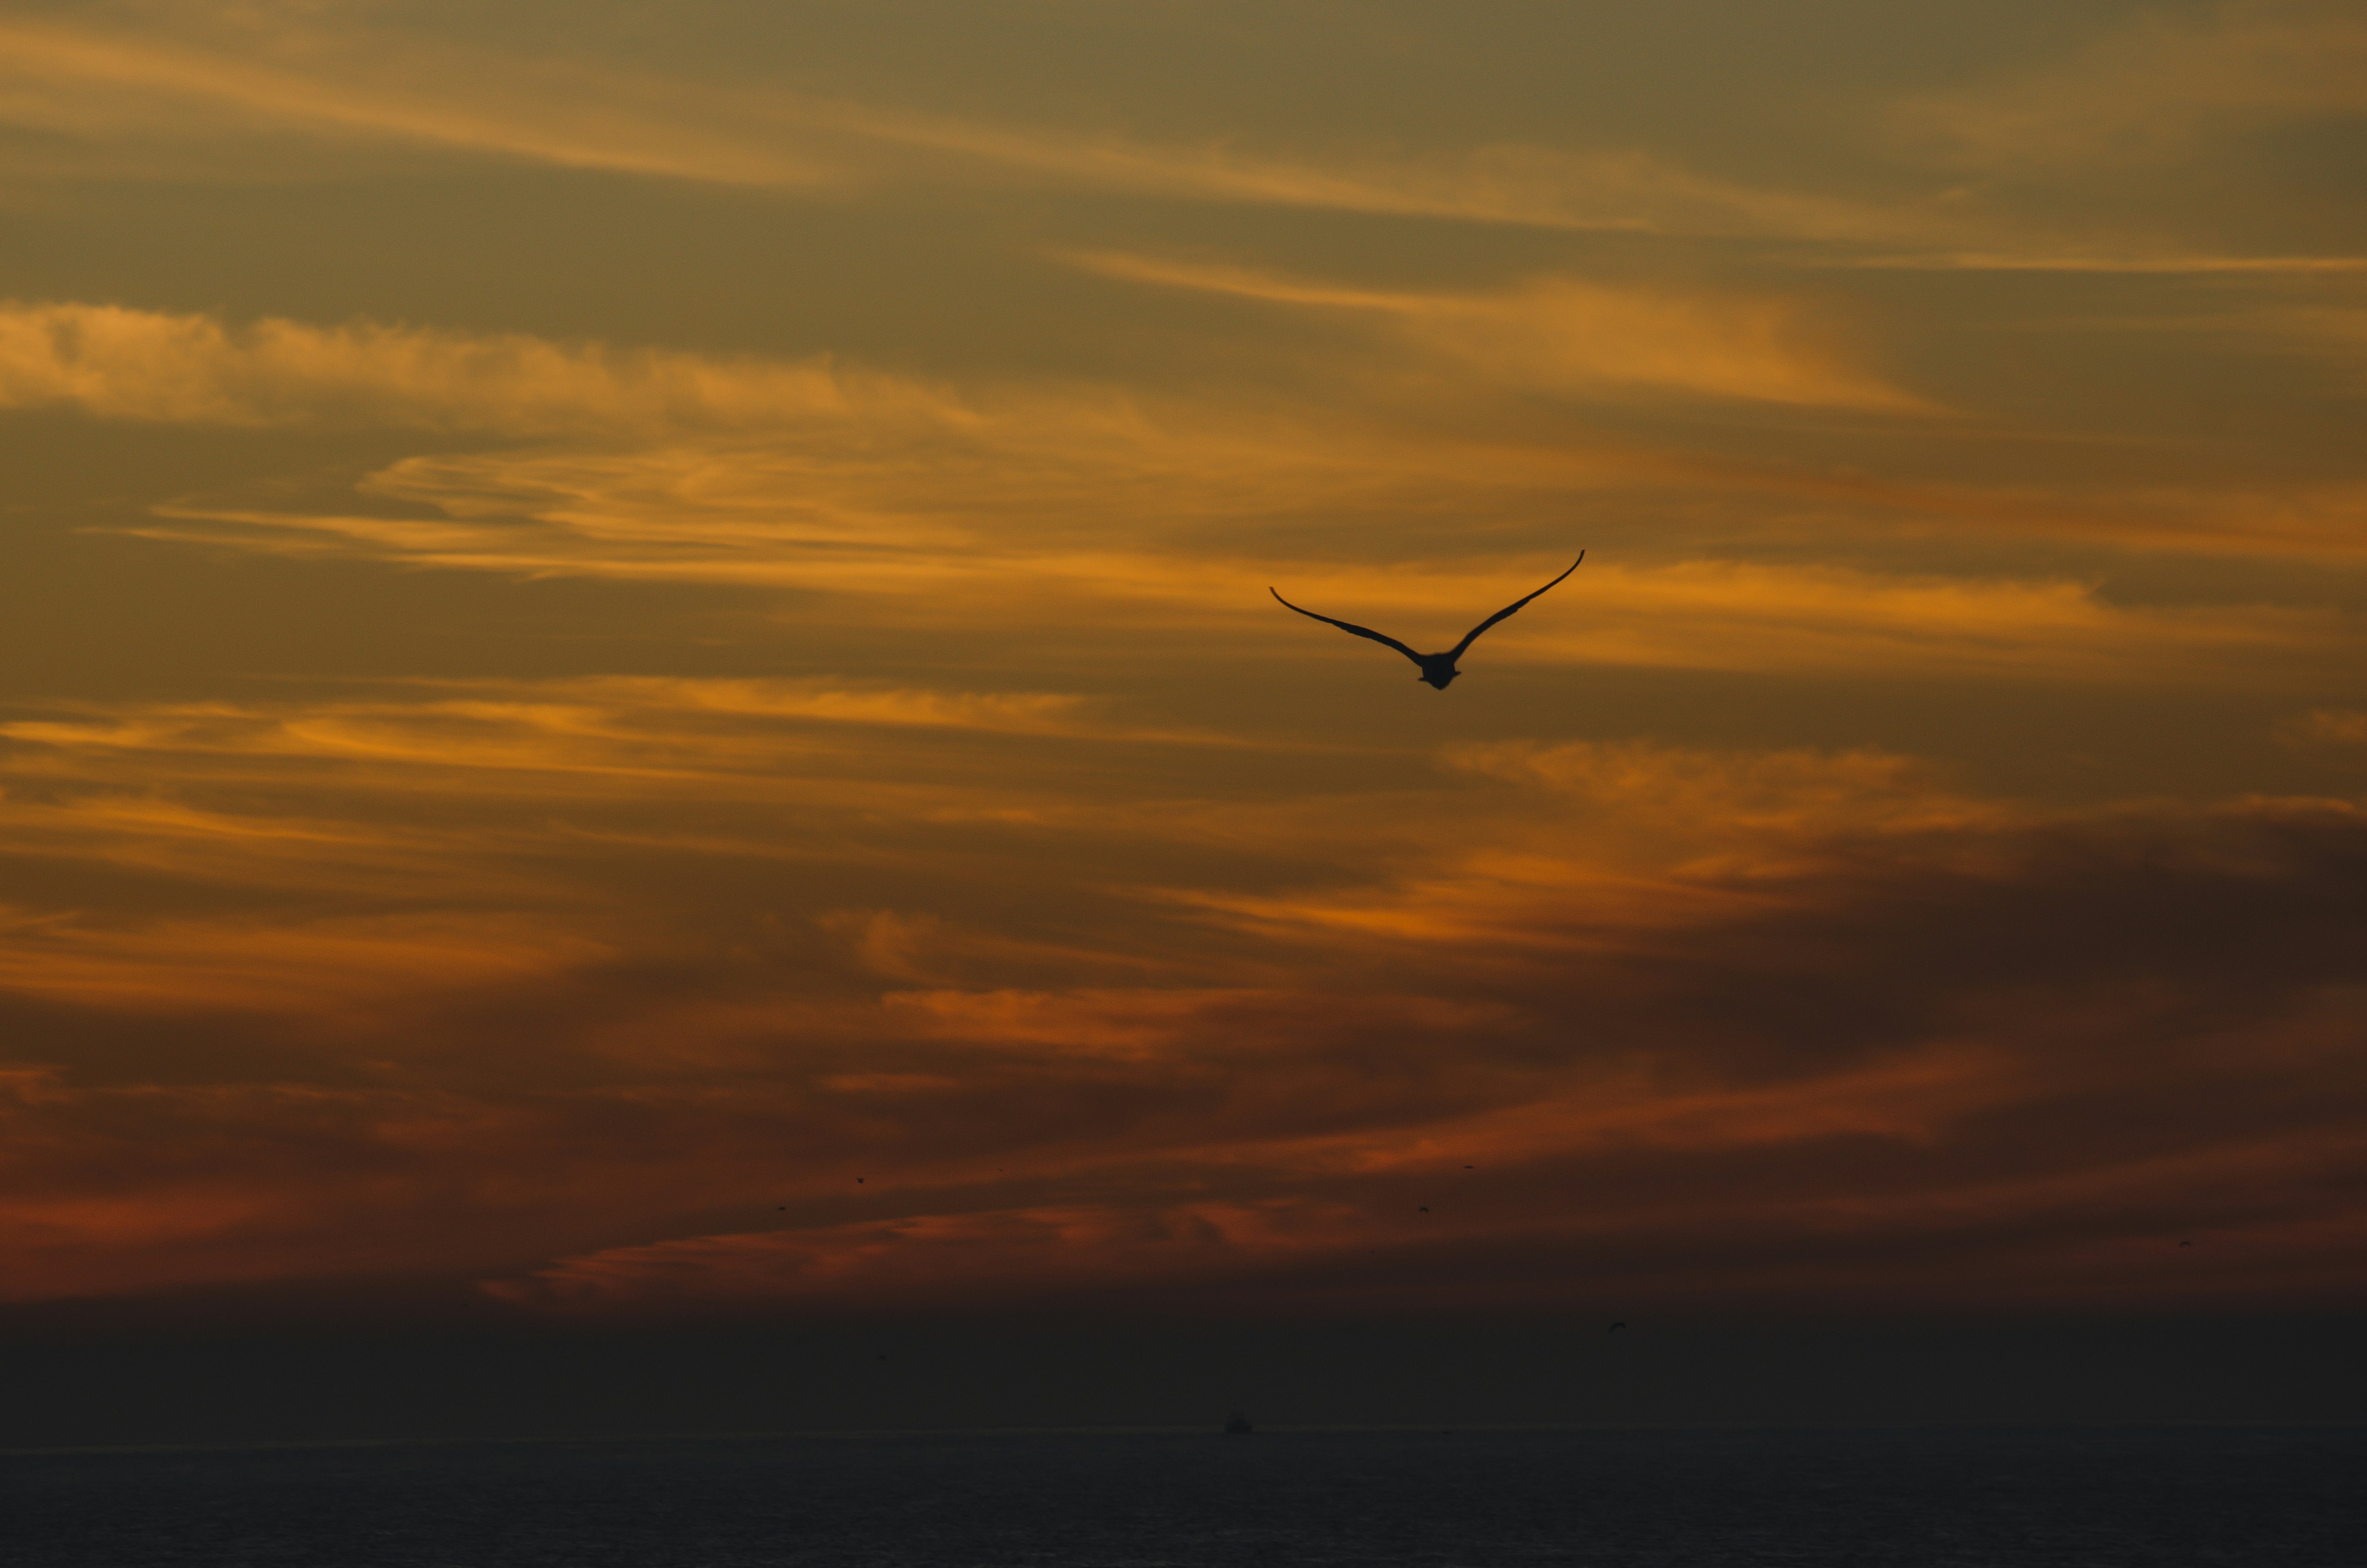 bird on flight at sunset